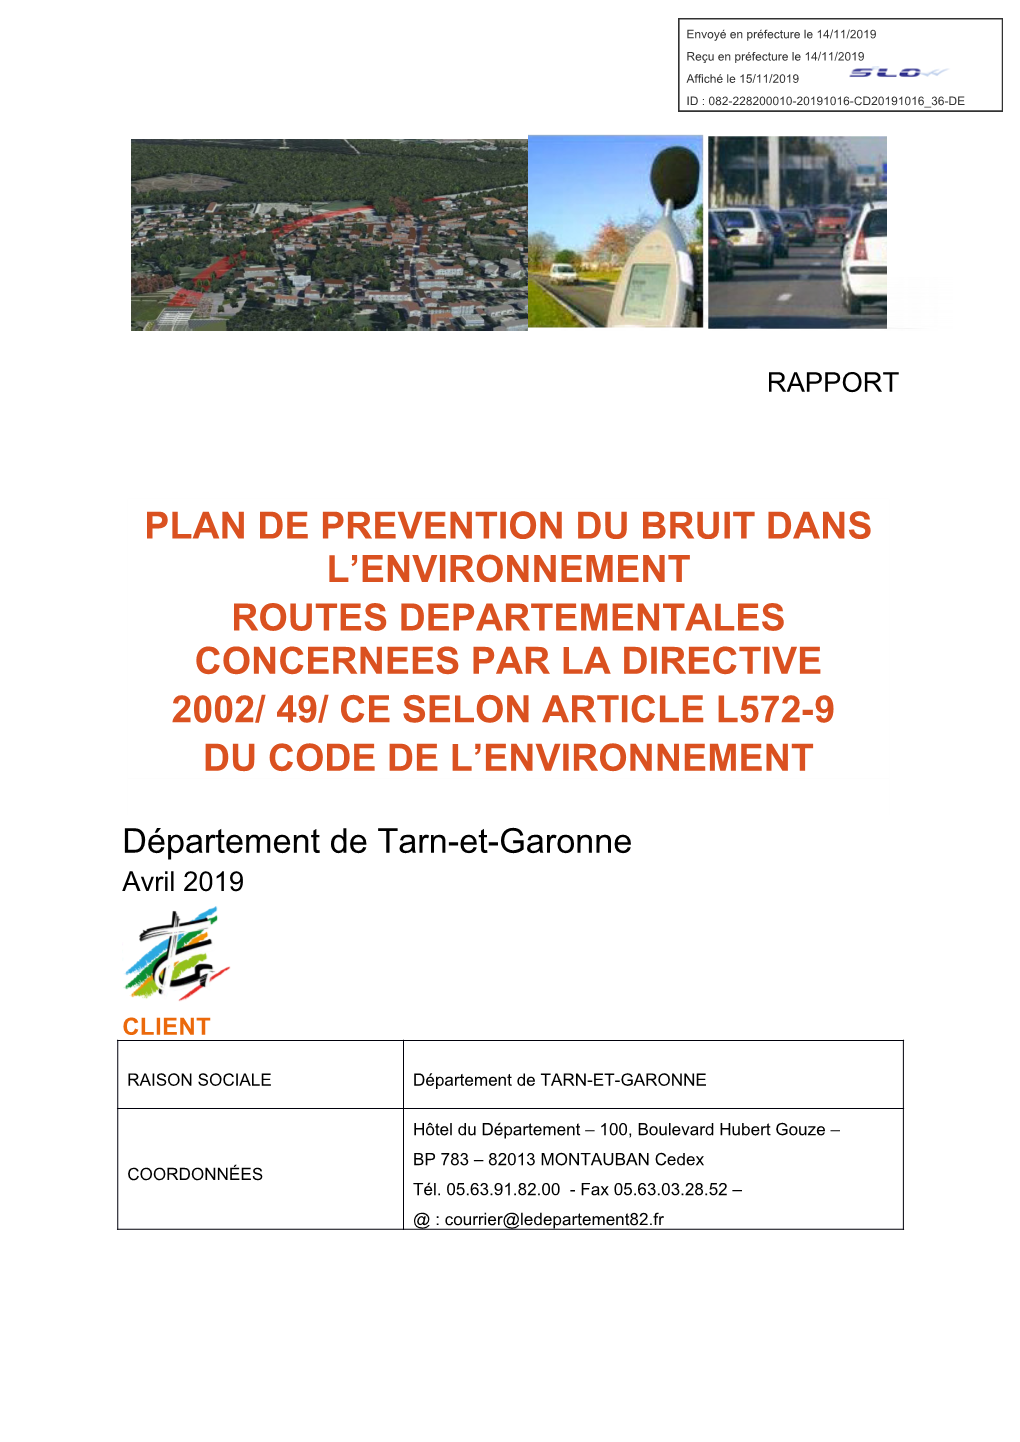 Plan De Prevention Du Bruit Dans L’Environnement Routes Departementales Concernees Par La Directive 2002/ 49/ Ce Selon Article L572-9 Du Code De L’Environnement